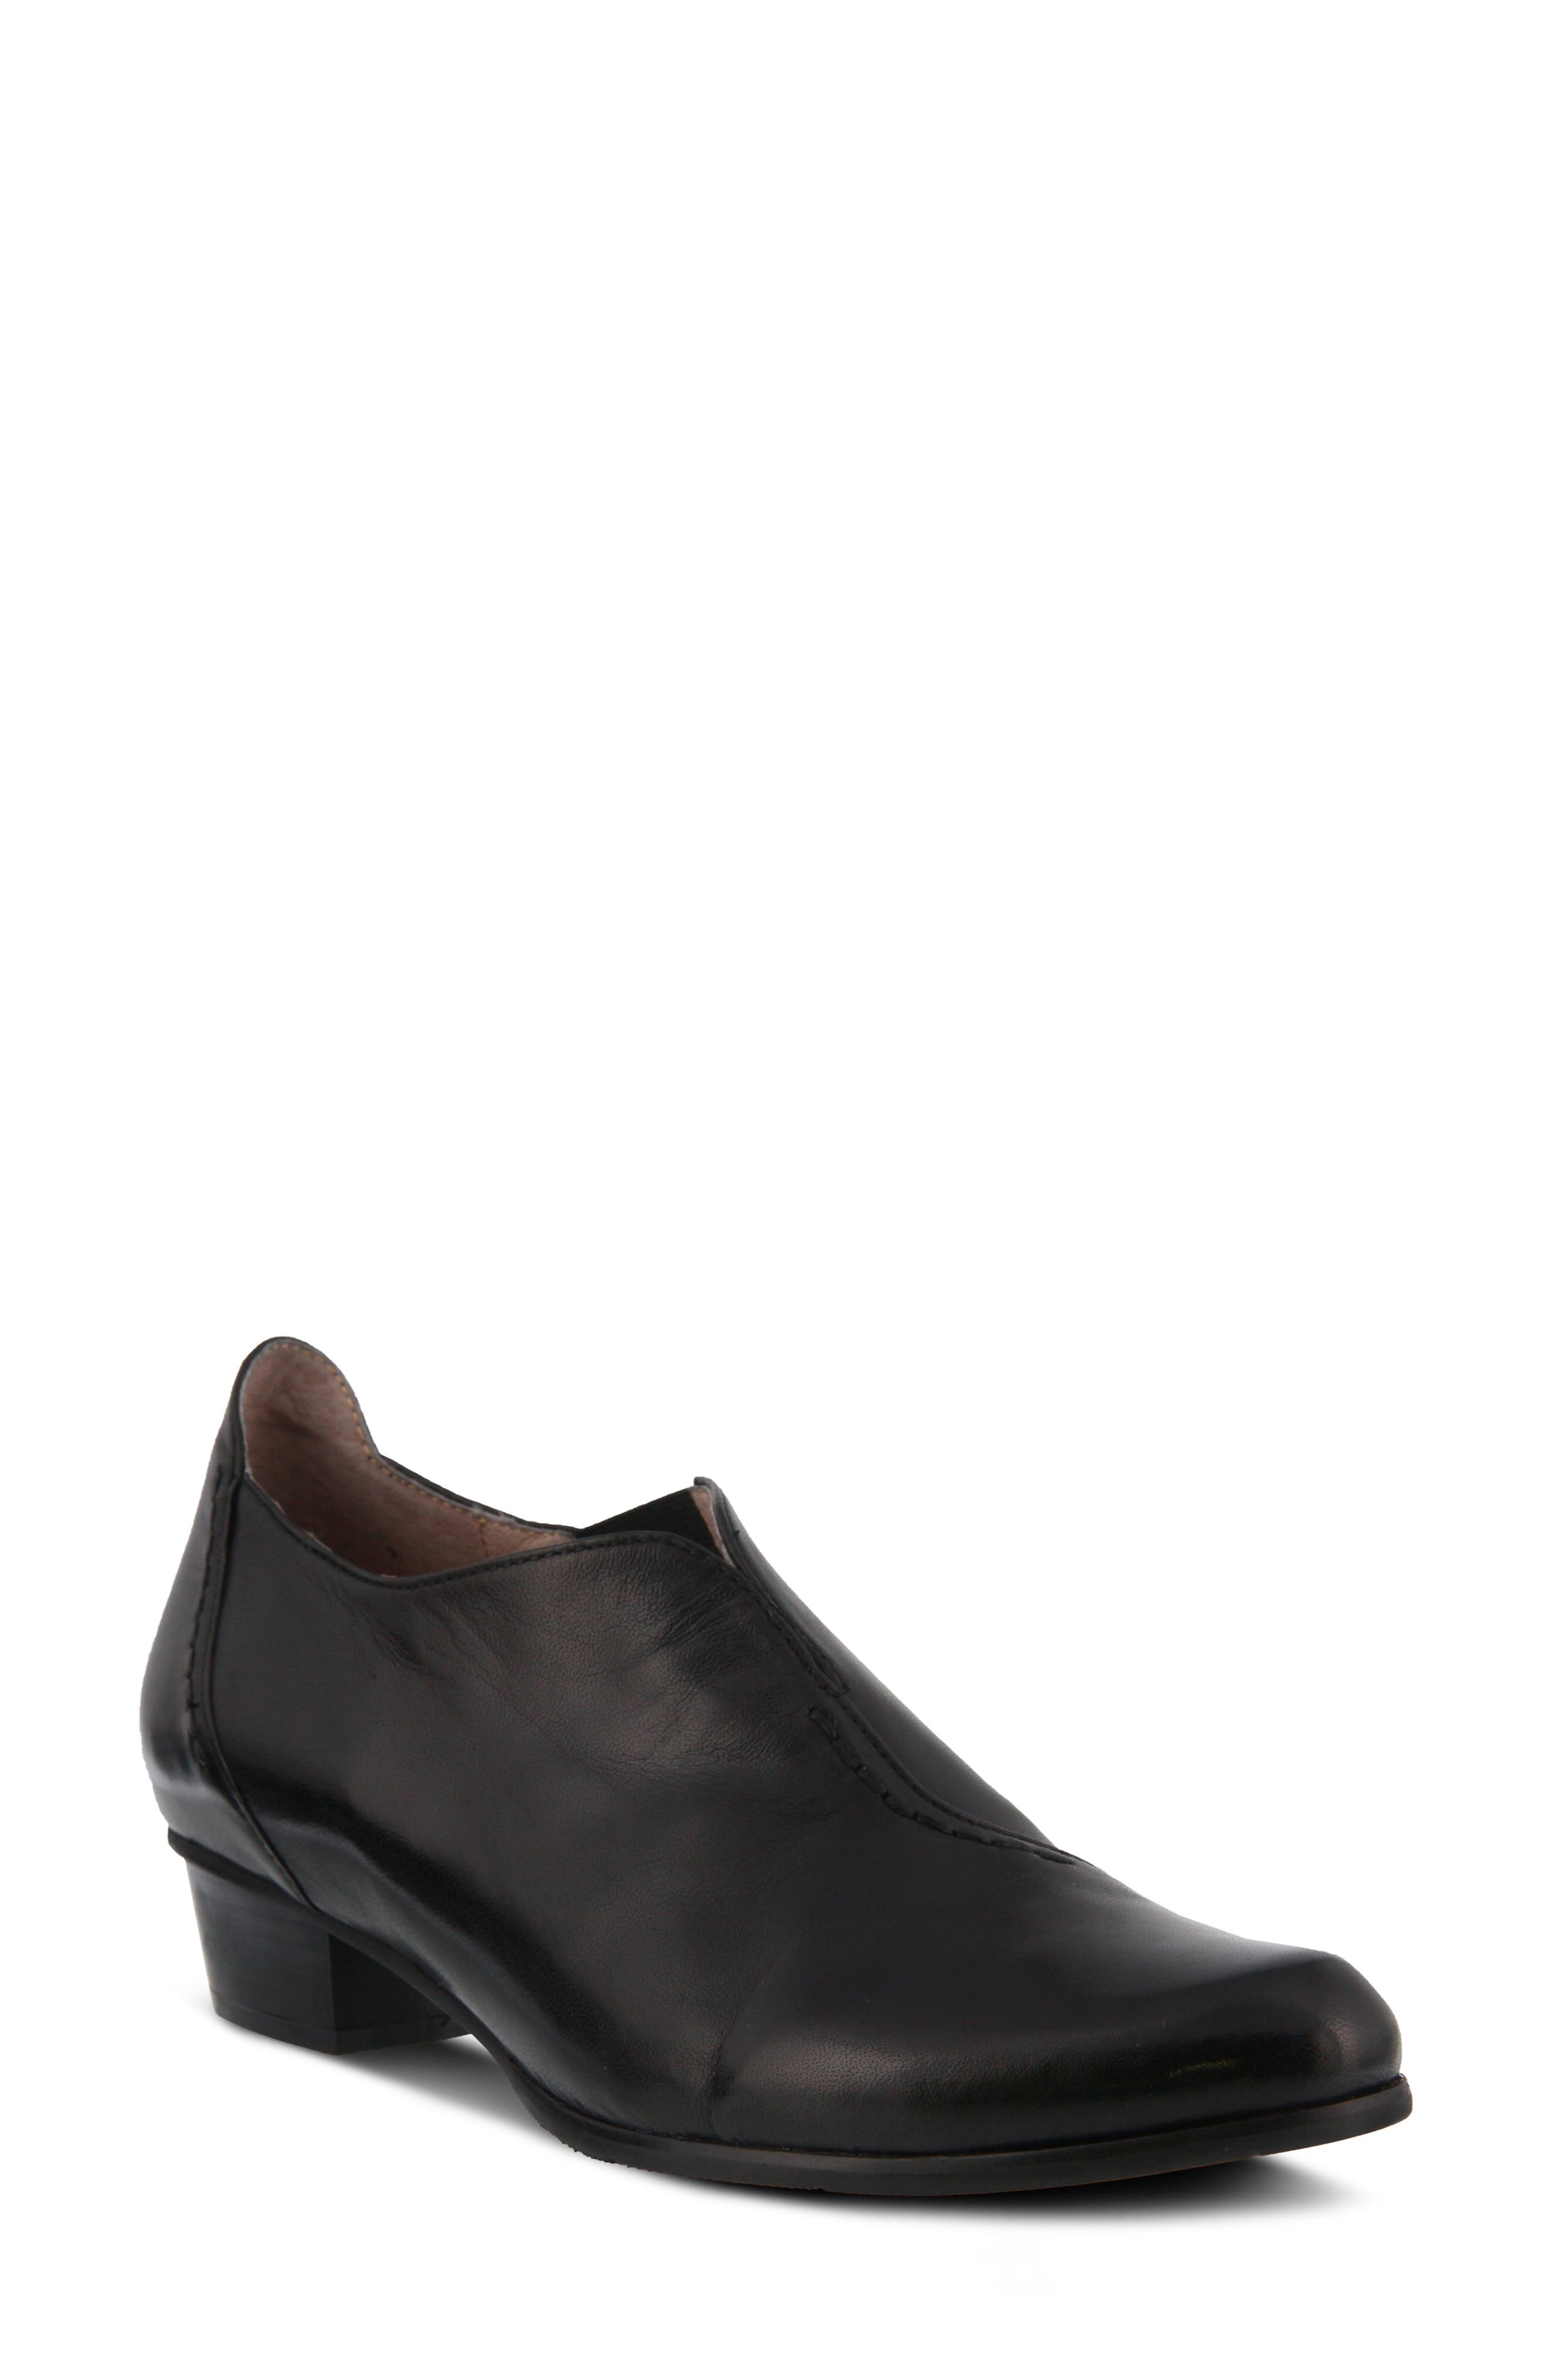 Flat Heel Ankle Boots \u0026 Booties | Nordstrom